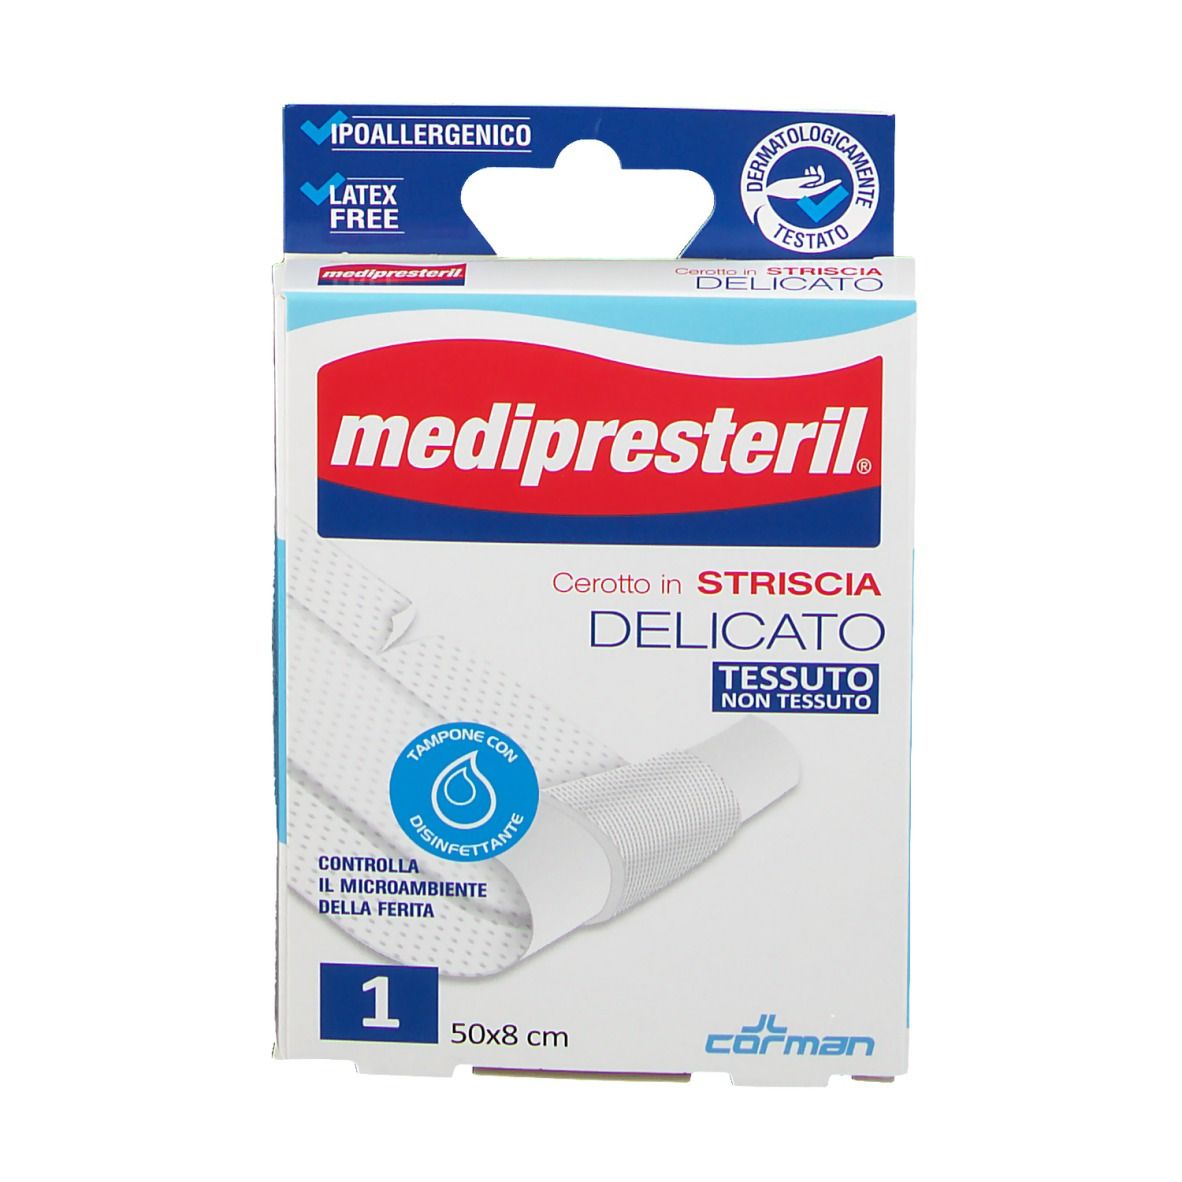 MediPresteril® Cerotto in Striscia Delicato 50 x 8 cm